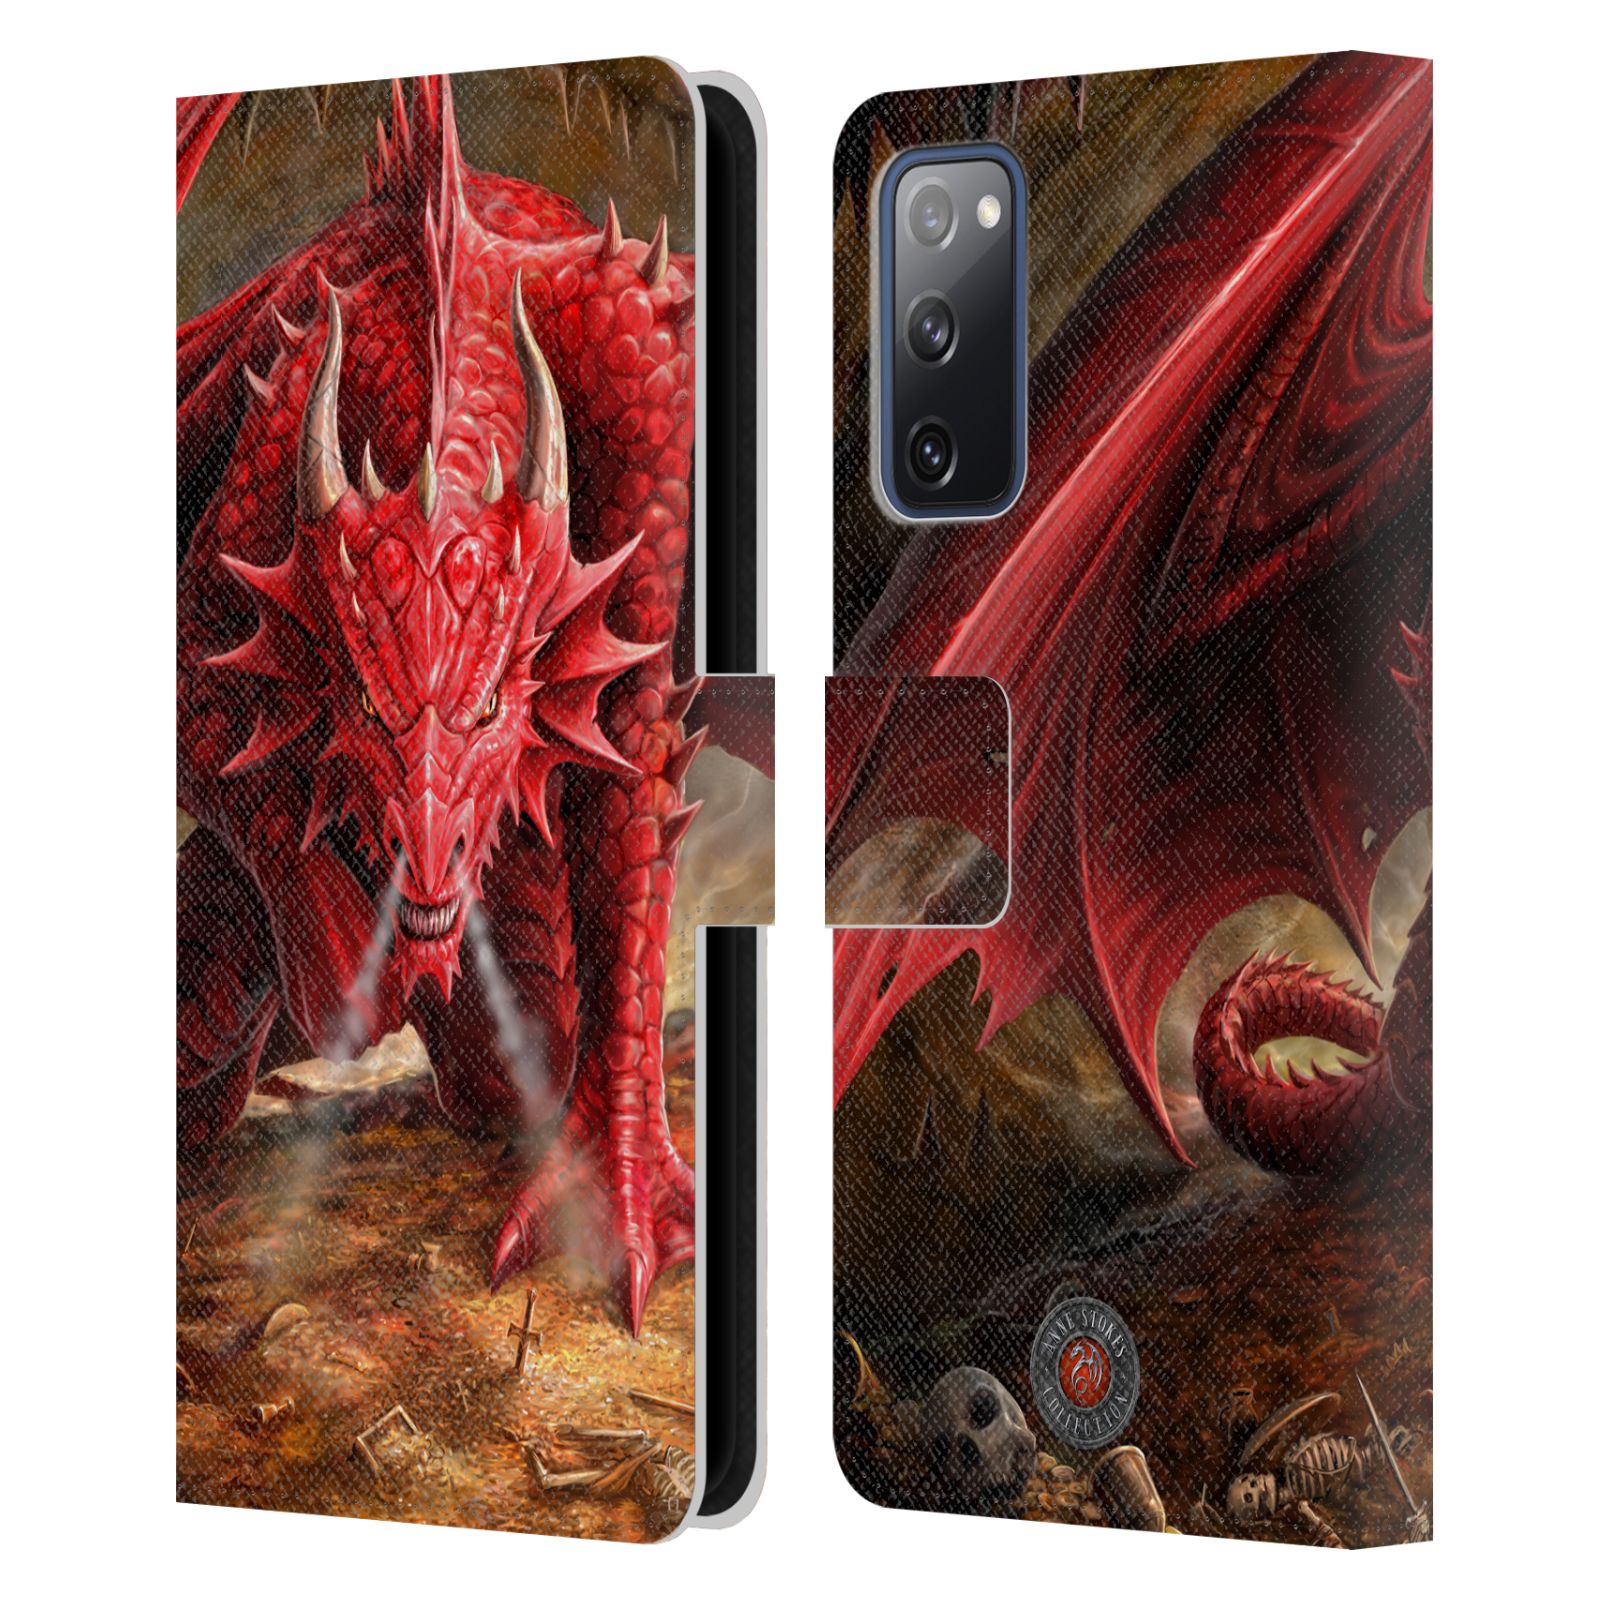 Pouzdro HEAD CASE na mobil Samsung Galaxy S20 FE / S20 FE 5G  fantasy - červený drak